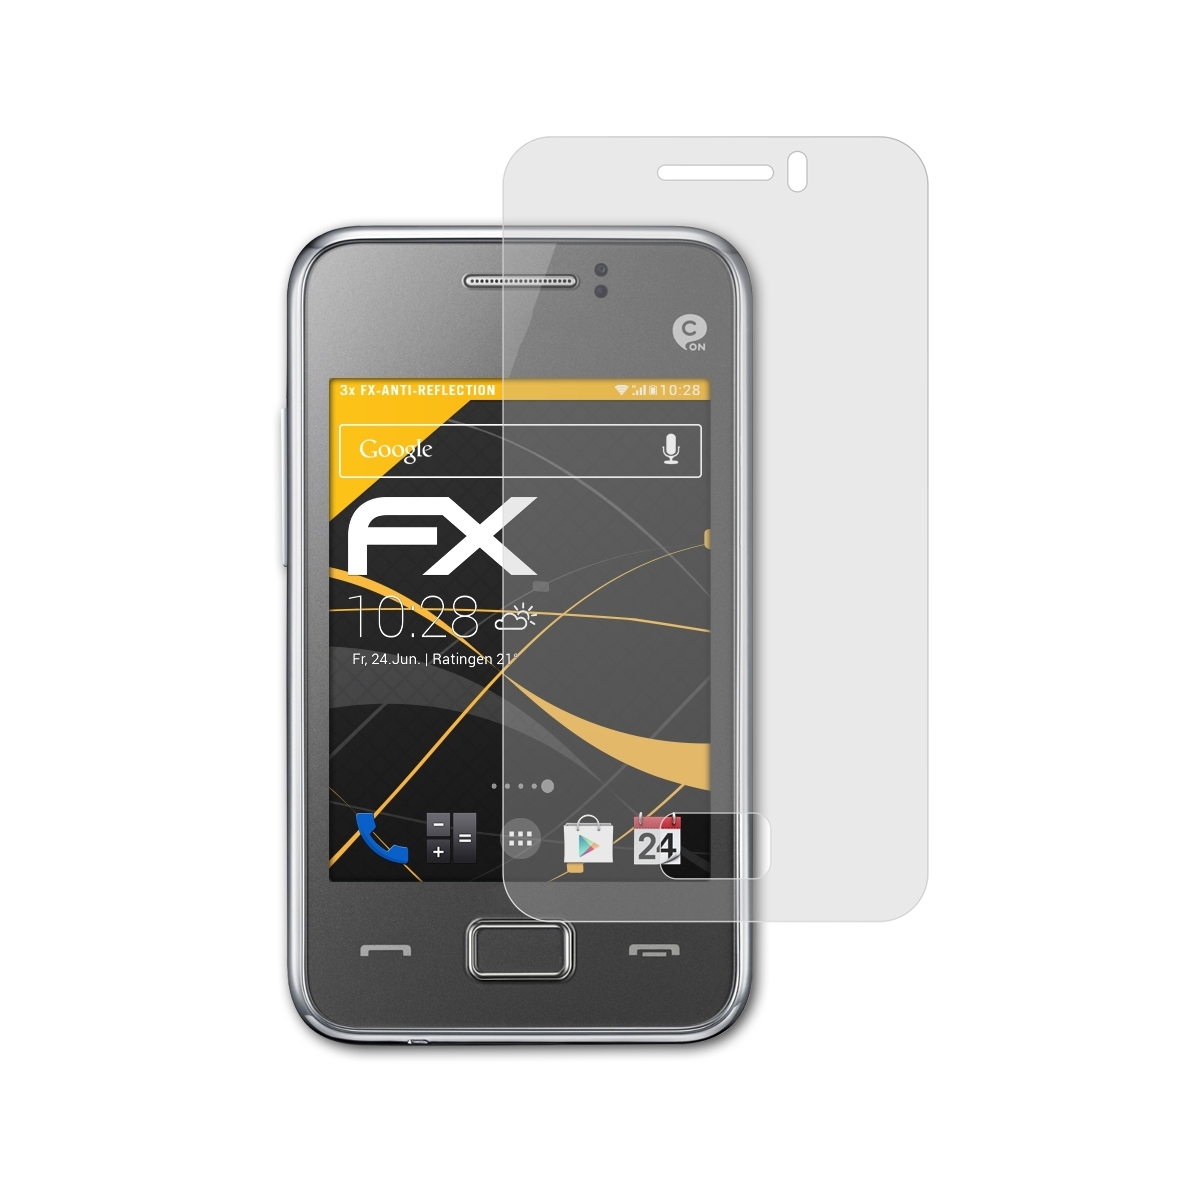 ATFOLIX 3x FX-Antireflex Displayschutz(für 80 (GT-S5222R)) Rex Samsung